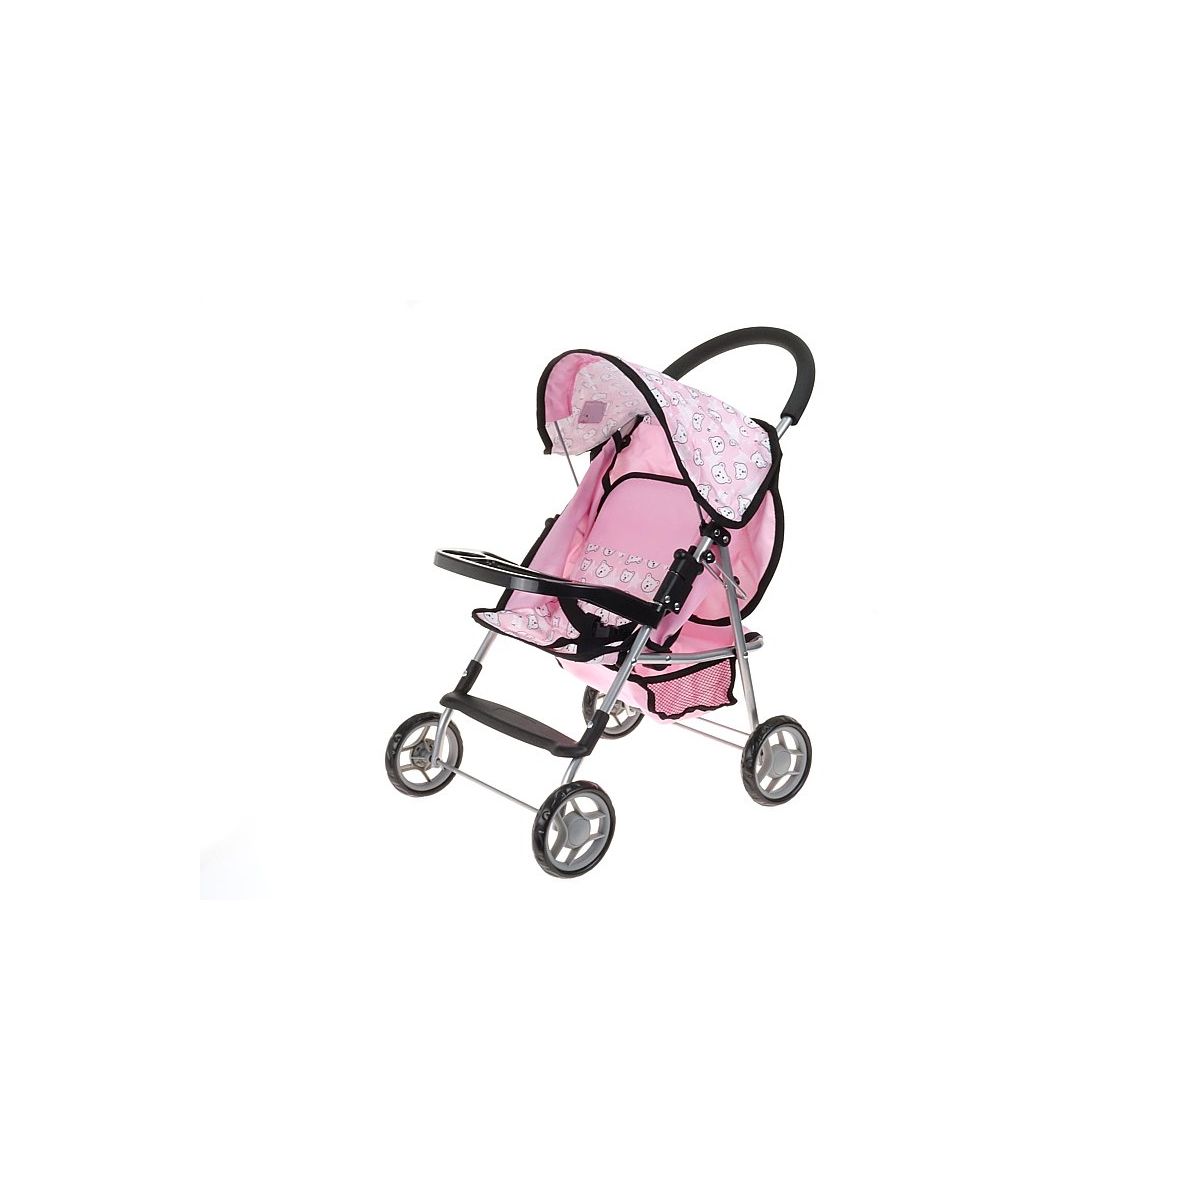 Wózek dla lalek spacerówka, róż/czarny małe misie Adar (549012)